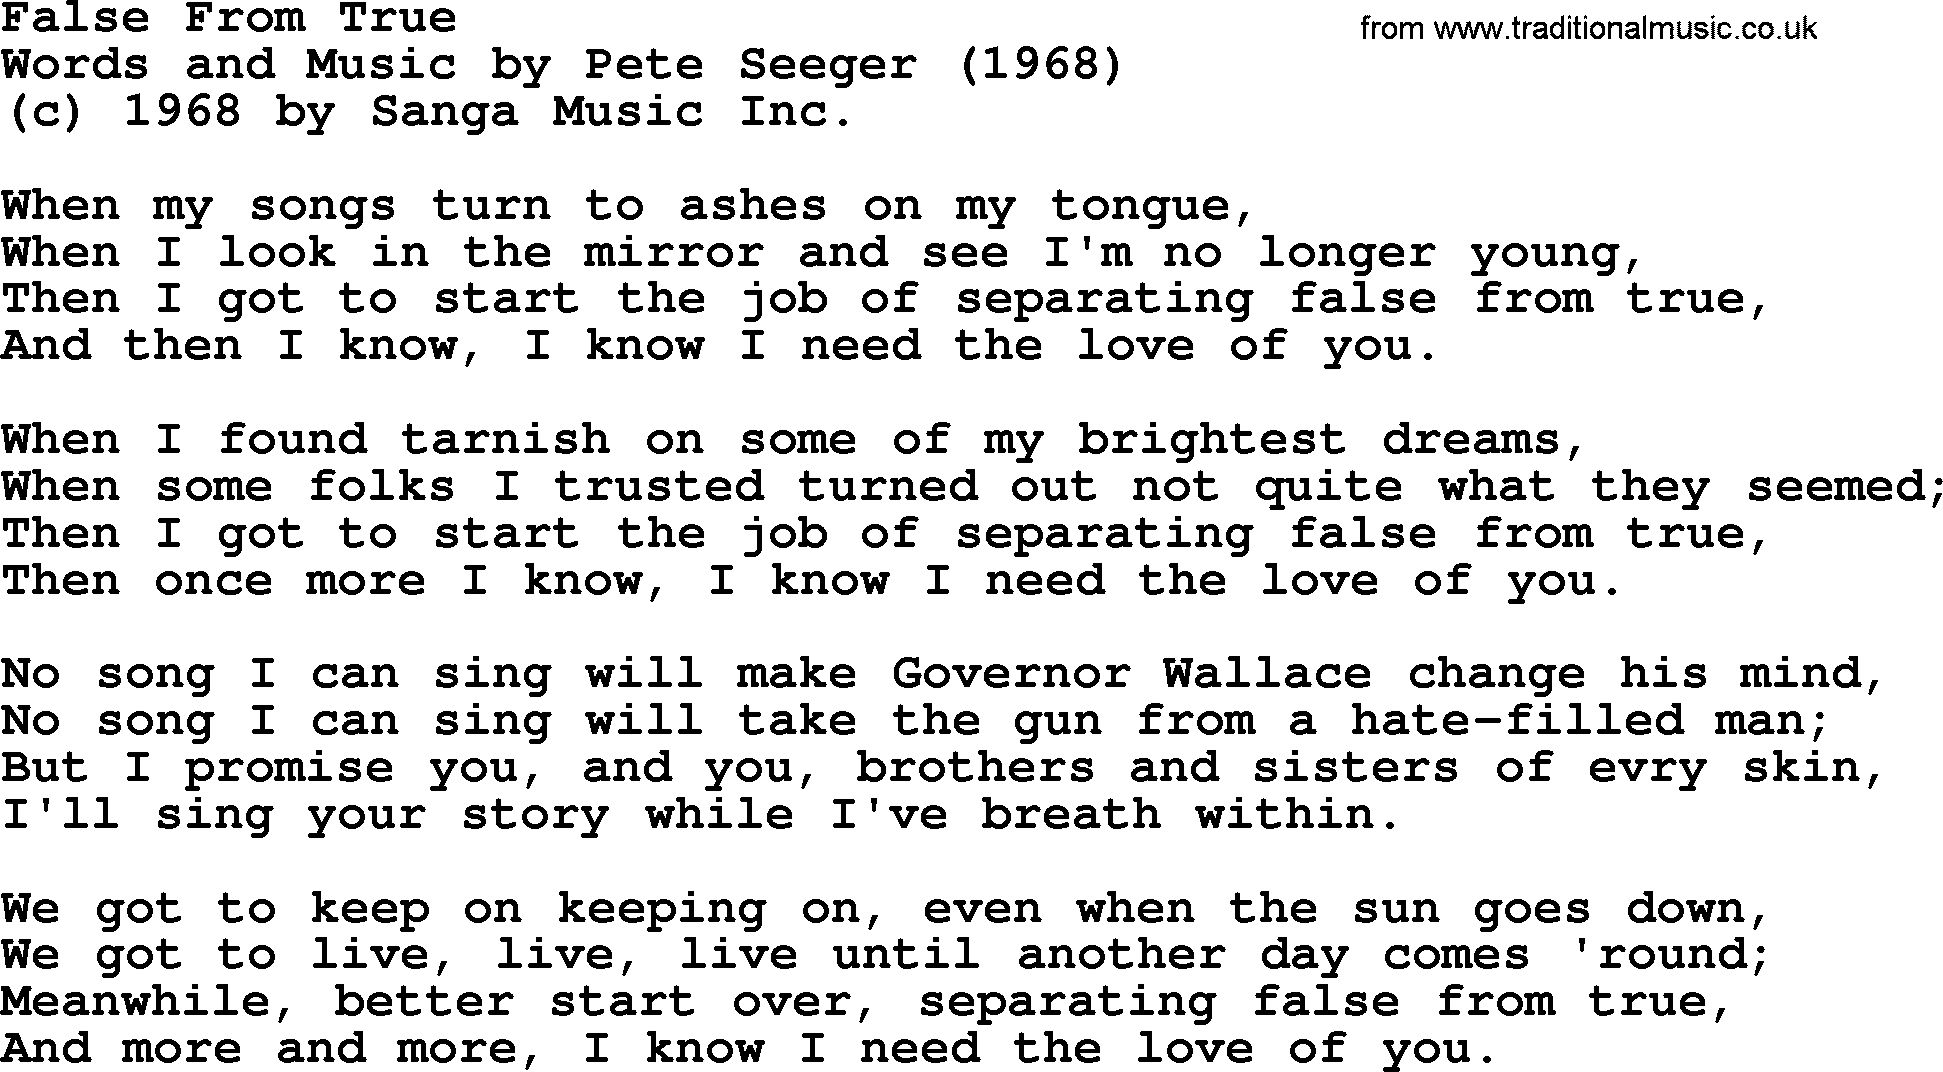 Pete Seeger song False From True-Pete-Seeger.txt lyrics